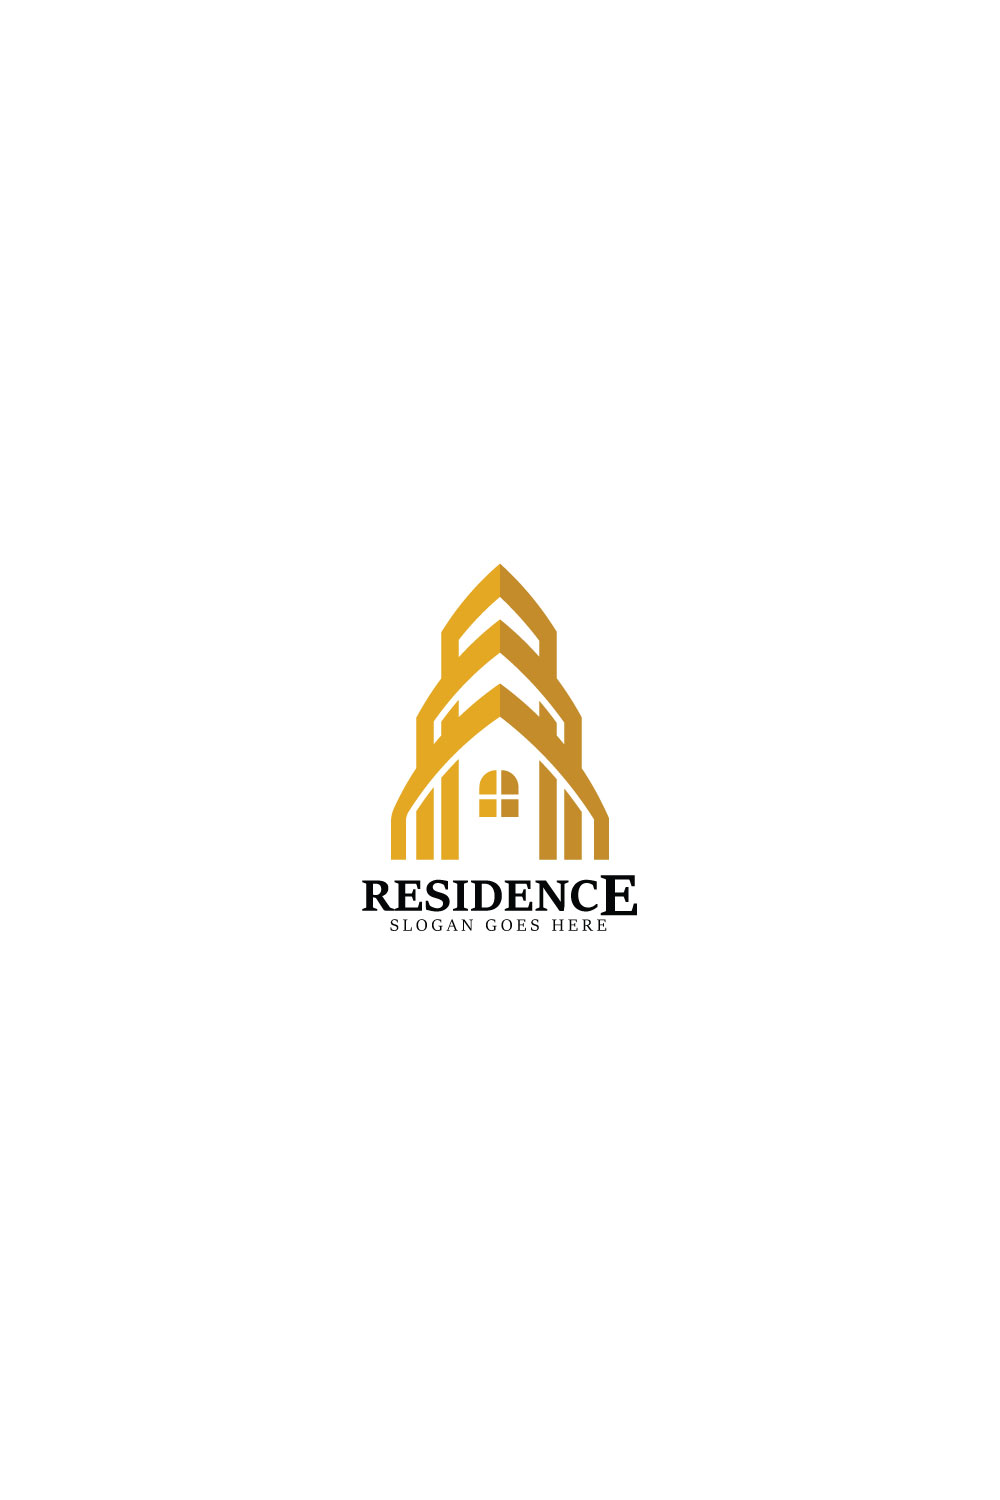 residence logo pint 277